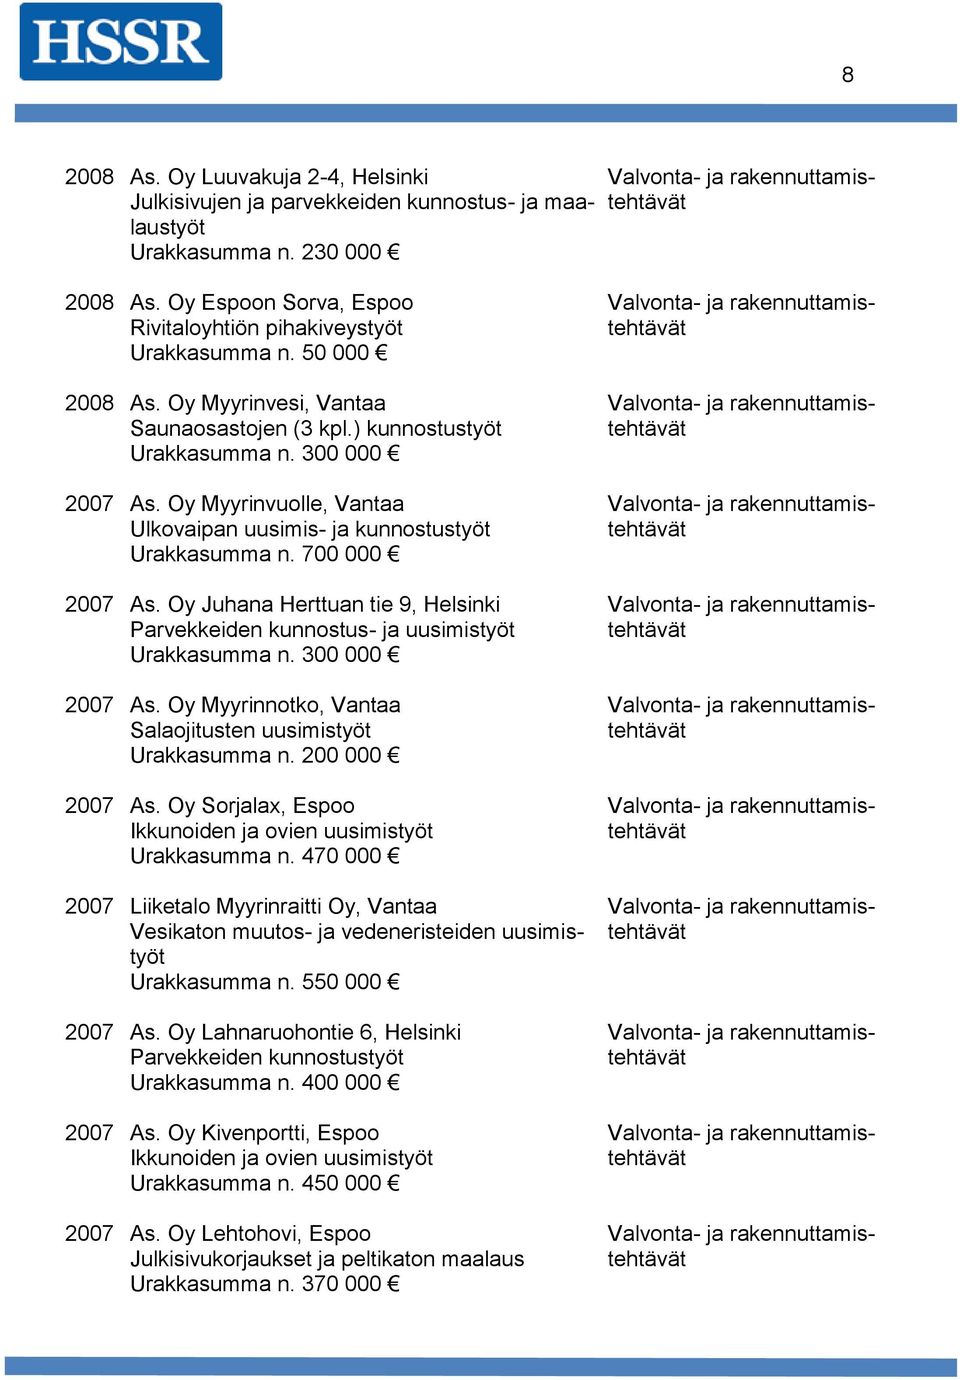 Oy Juhana Herttuan tie 9, Helsinki Parvekkeiden kunnostus ja uusimistyöt 2007 As. Oy Myyrinnotko, Vantaa Salaojitusten uusimistyöt Urakkasumma n. 200 000 2007 As.